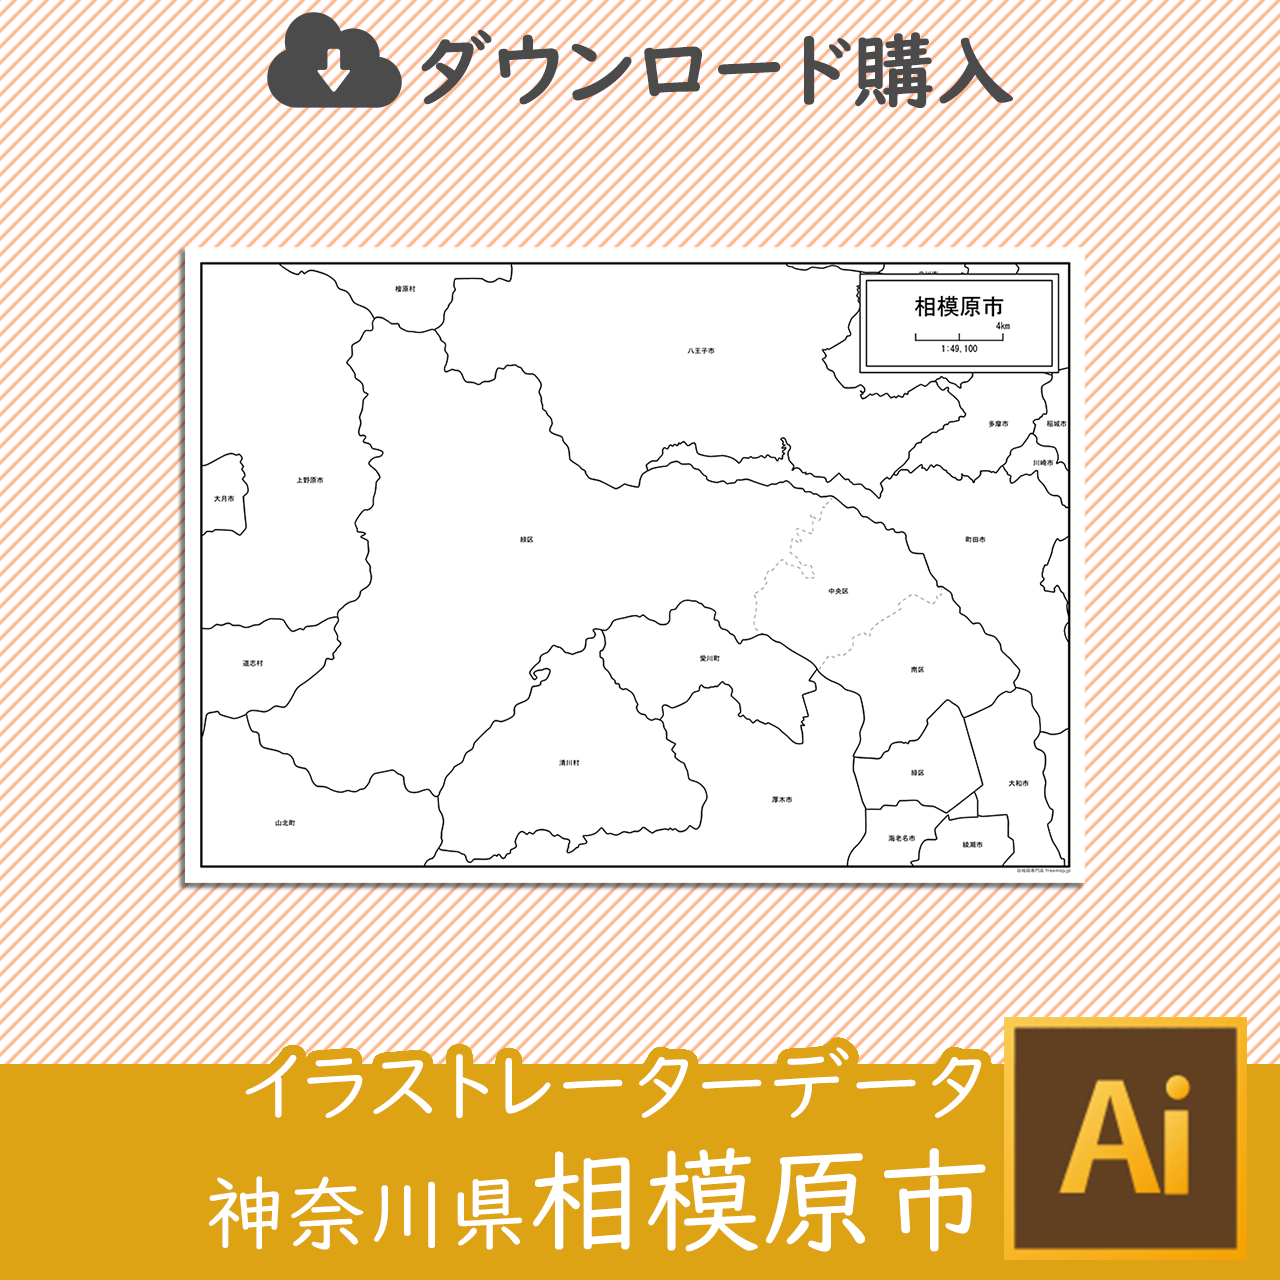 神奈川県相模原市のサムネイル画像